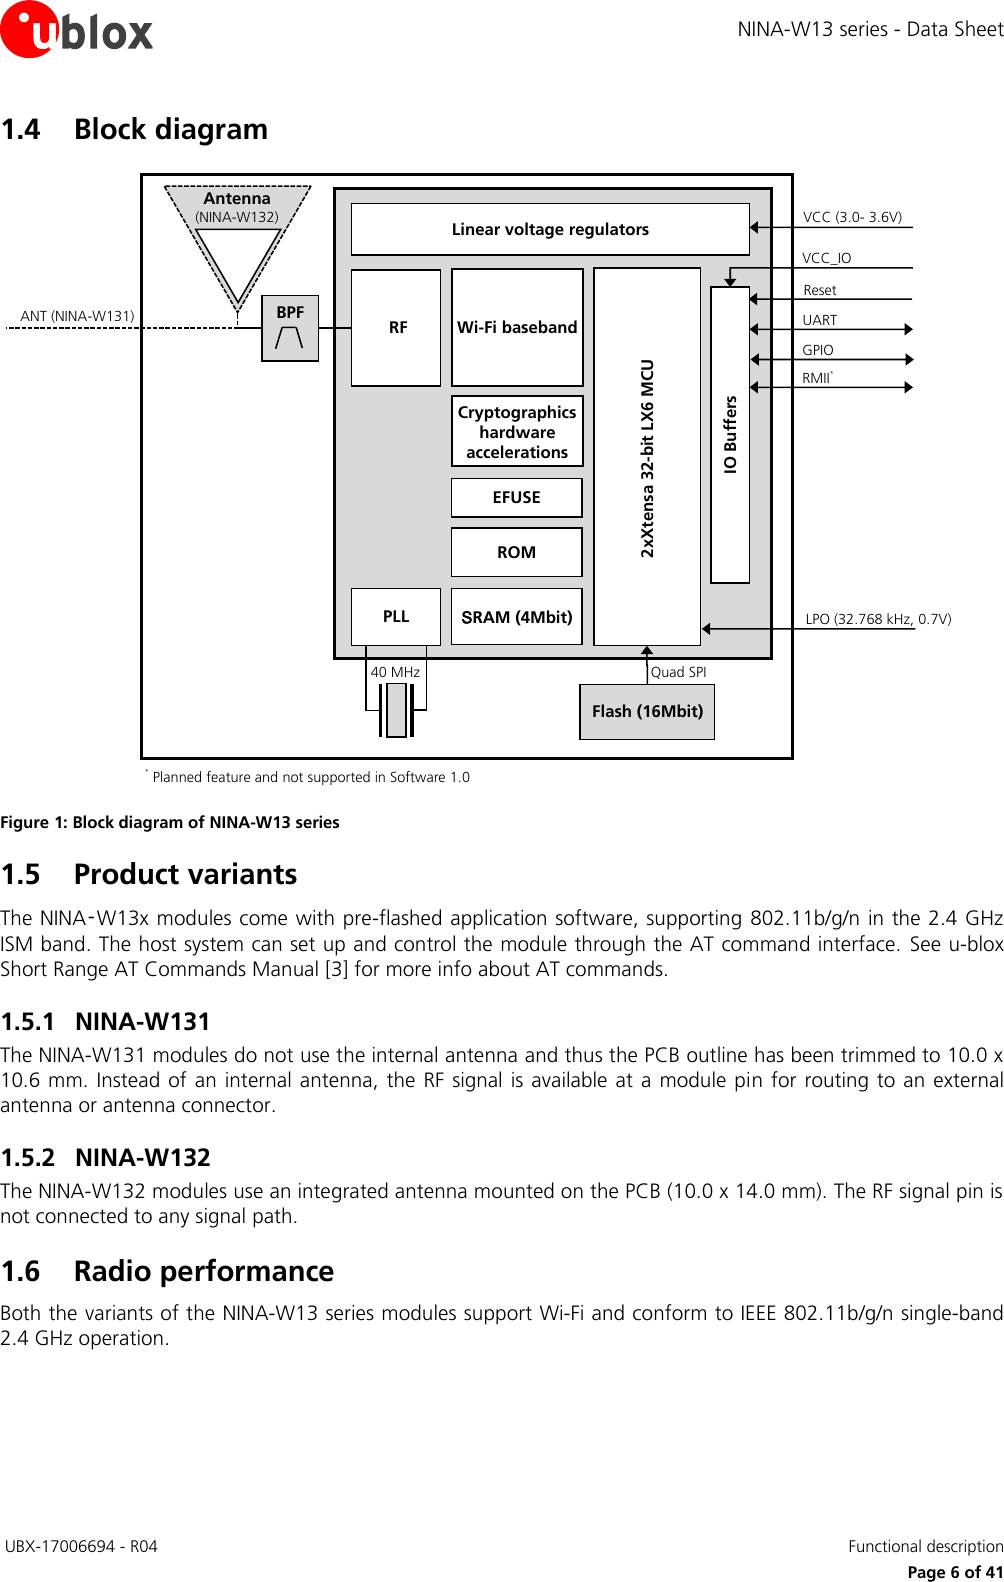 Page 6 of u blox NINAW13 Wireless Communication System Module User Manual NINA W13 series